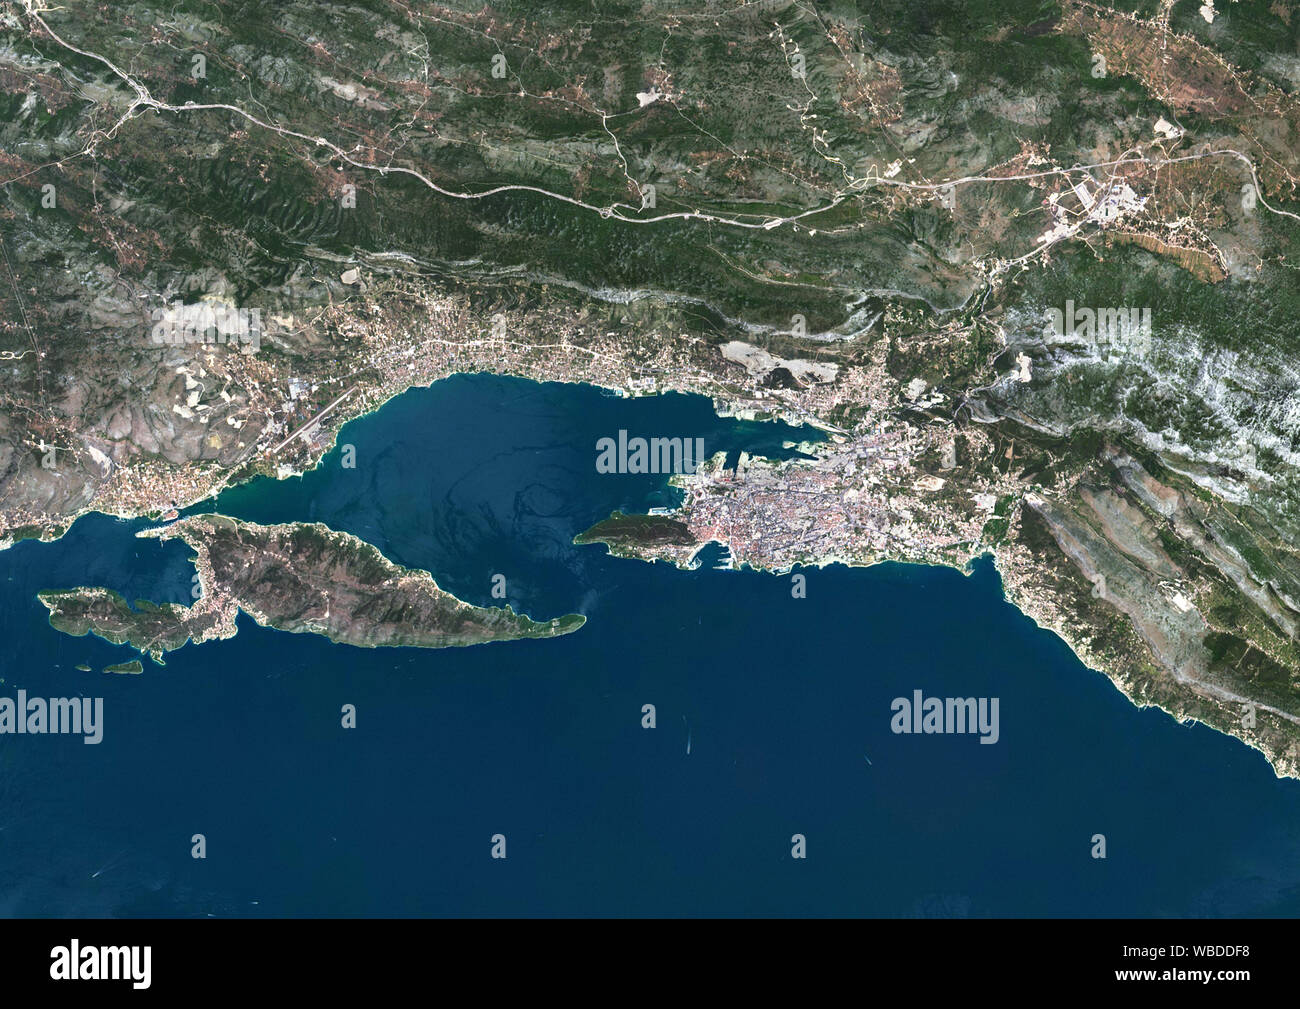 Farbe Satellitenbild von Split, Kroatien, auf einer kleinen Halbinsel am östlichen Ufer der Adria. Bild am 6. August 2016 gesammelt von Landsat 8 Satelliten. Stockfoto